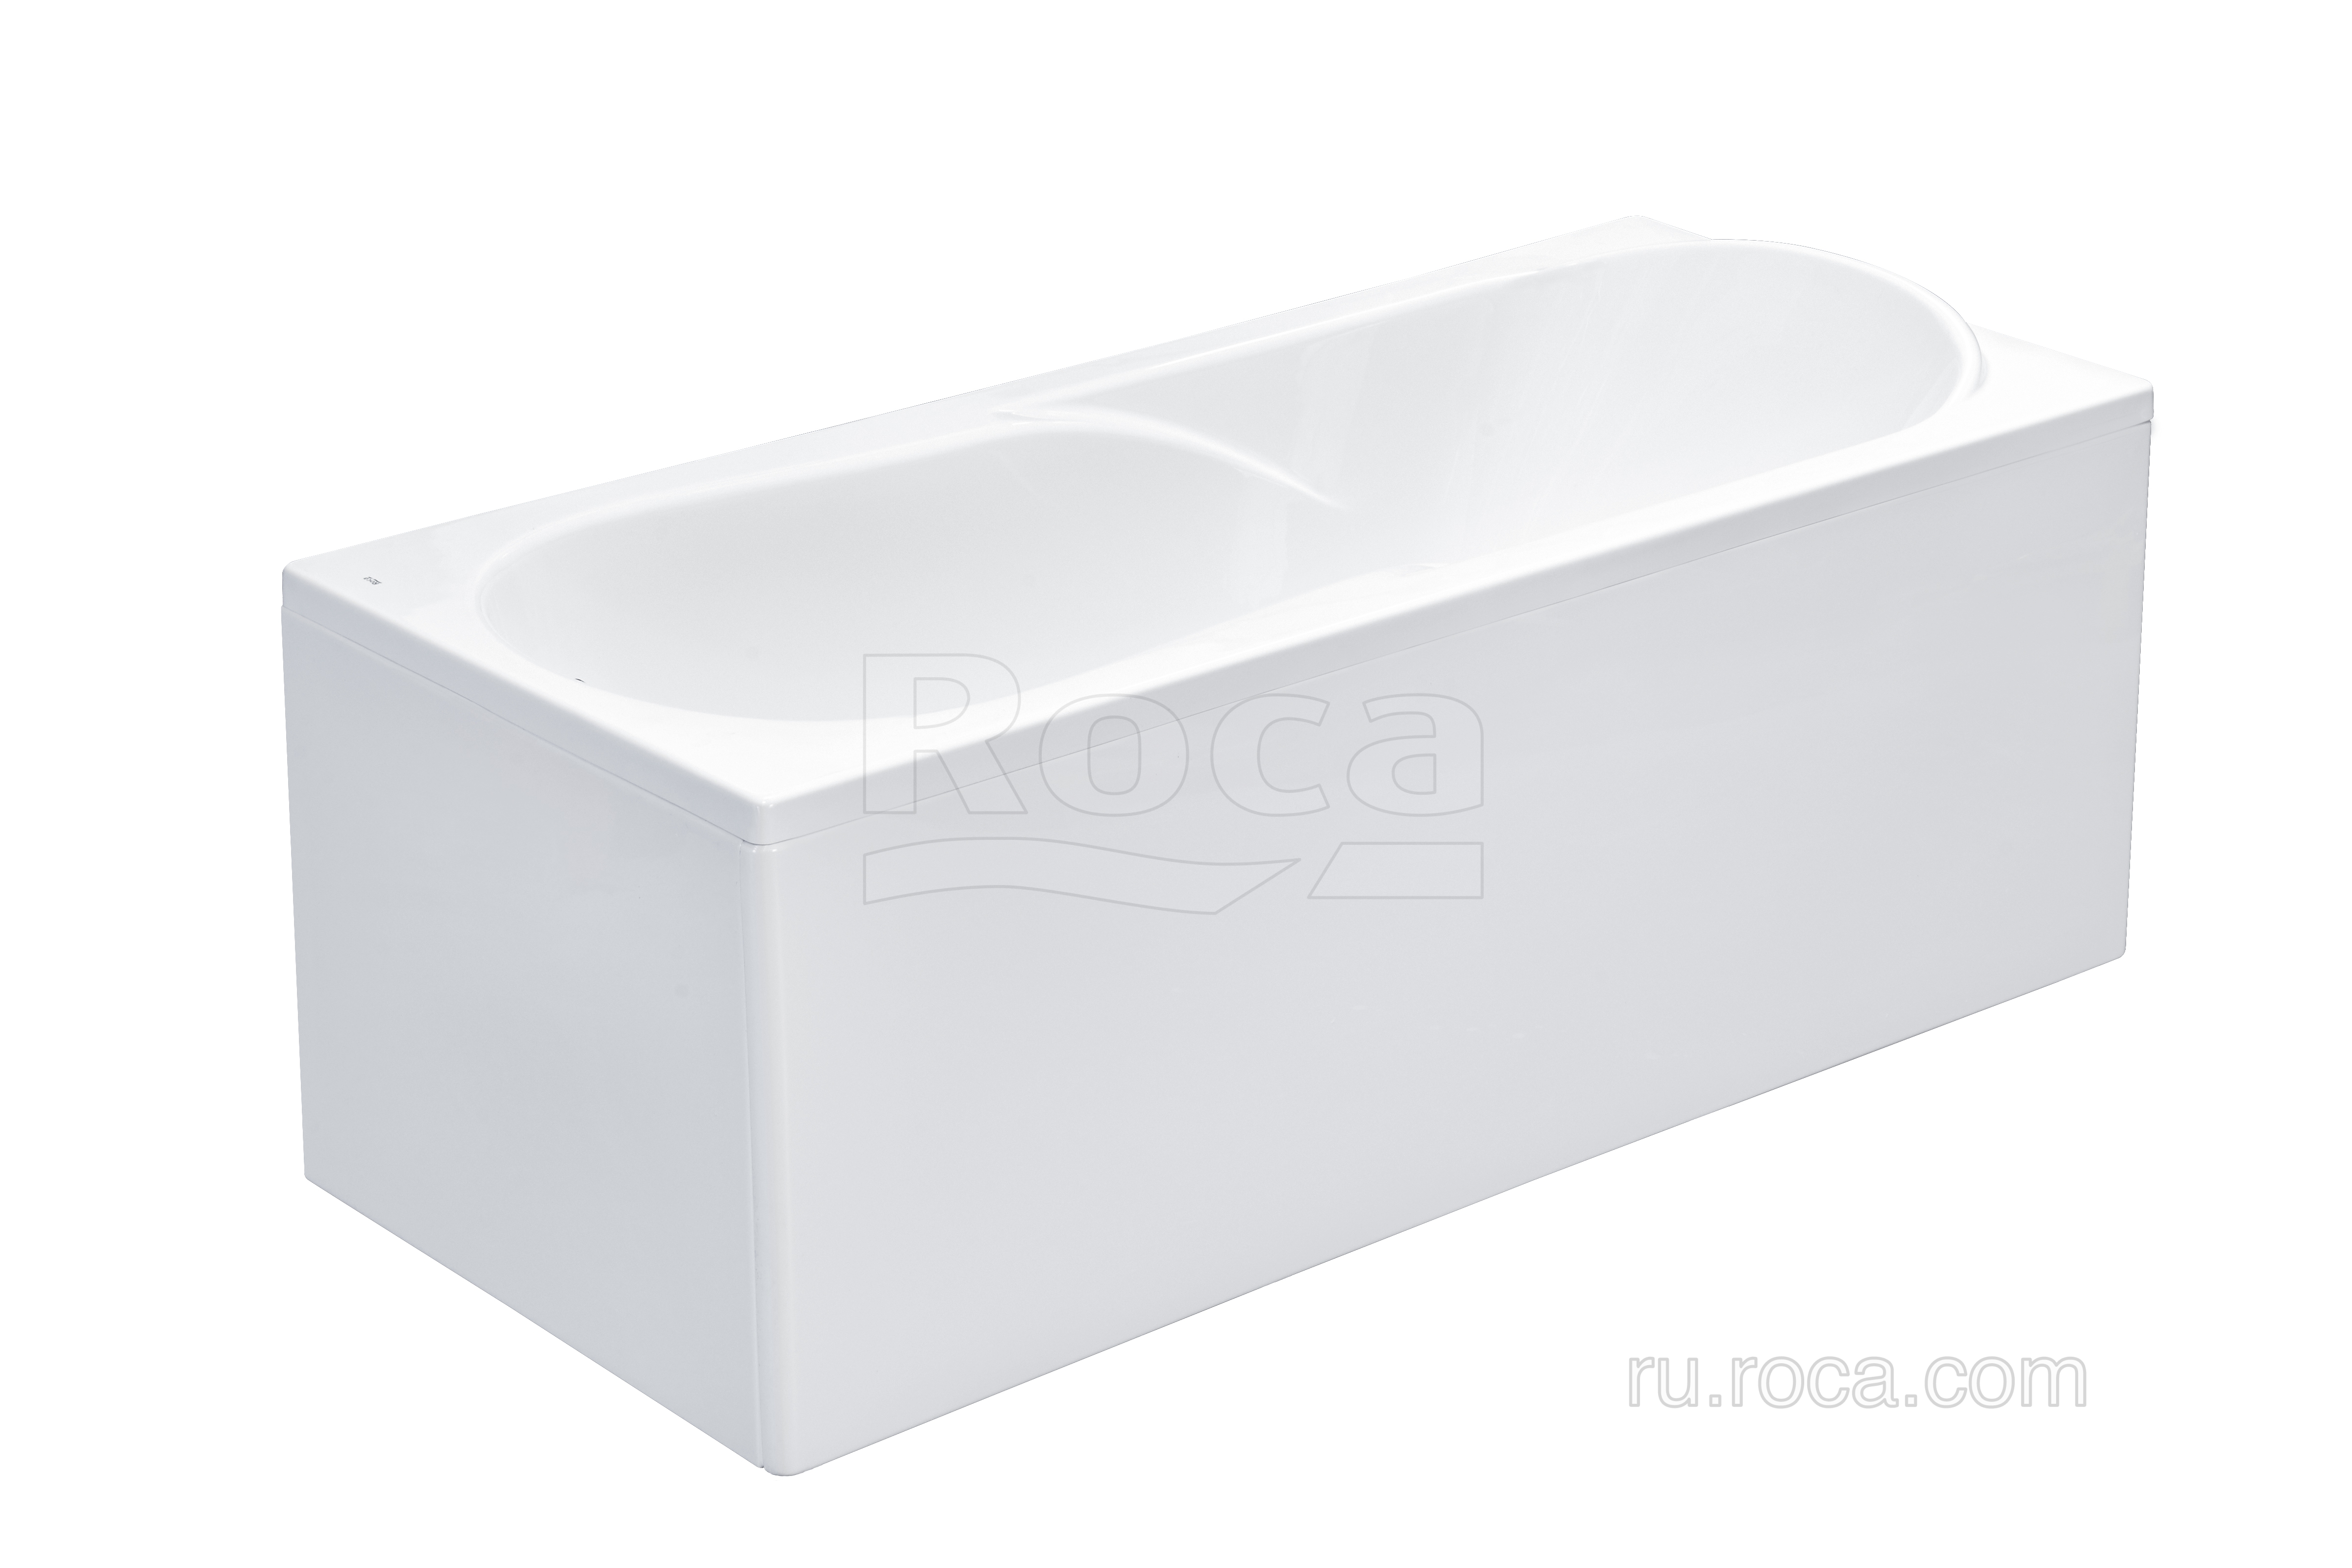 Ванна Roca Uno 170х75 прямоугольная белая ZRU9302870